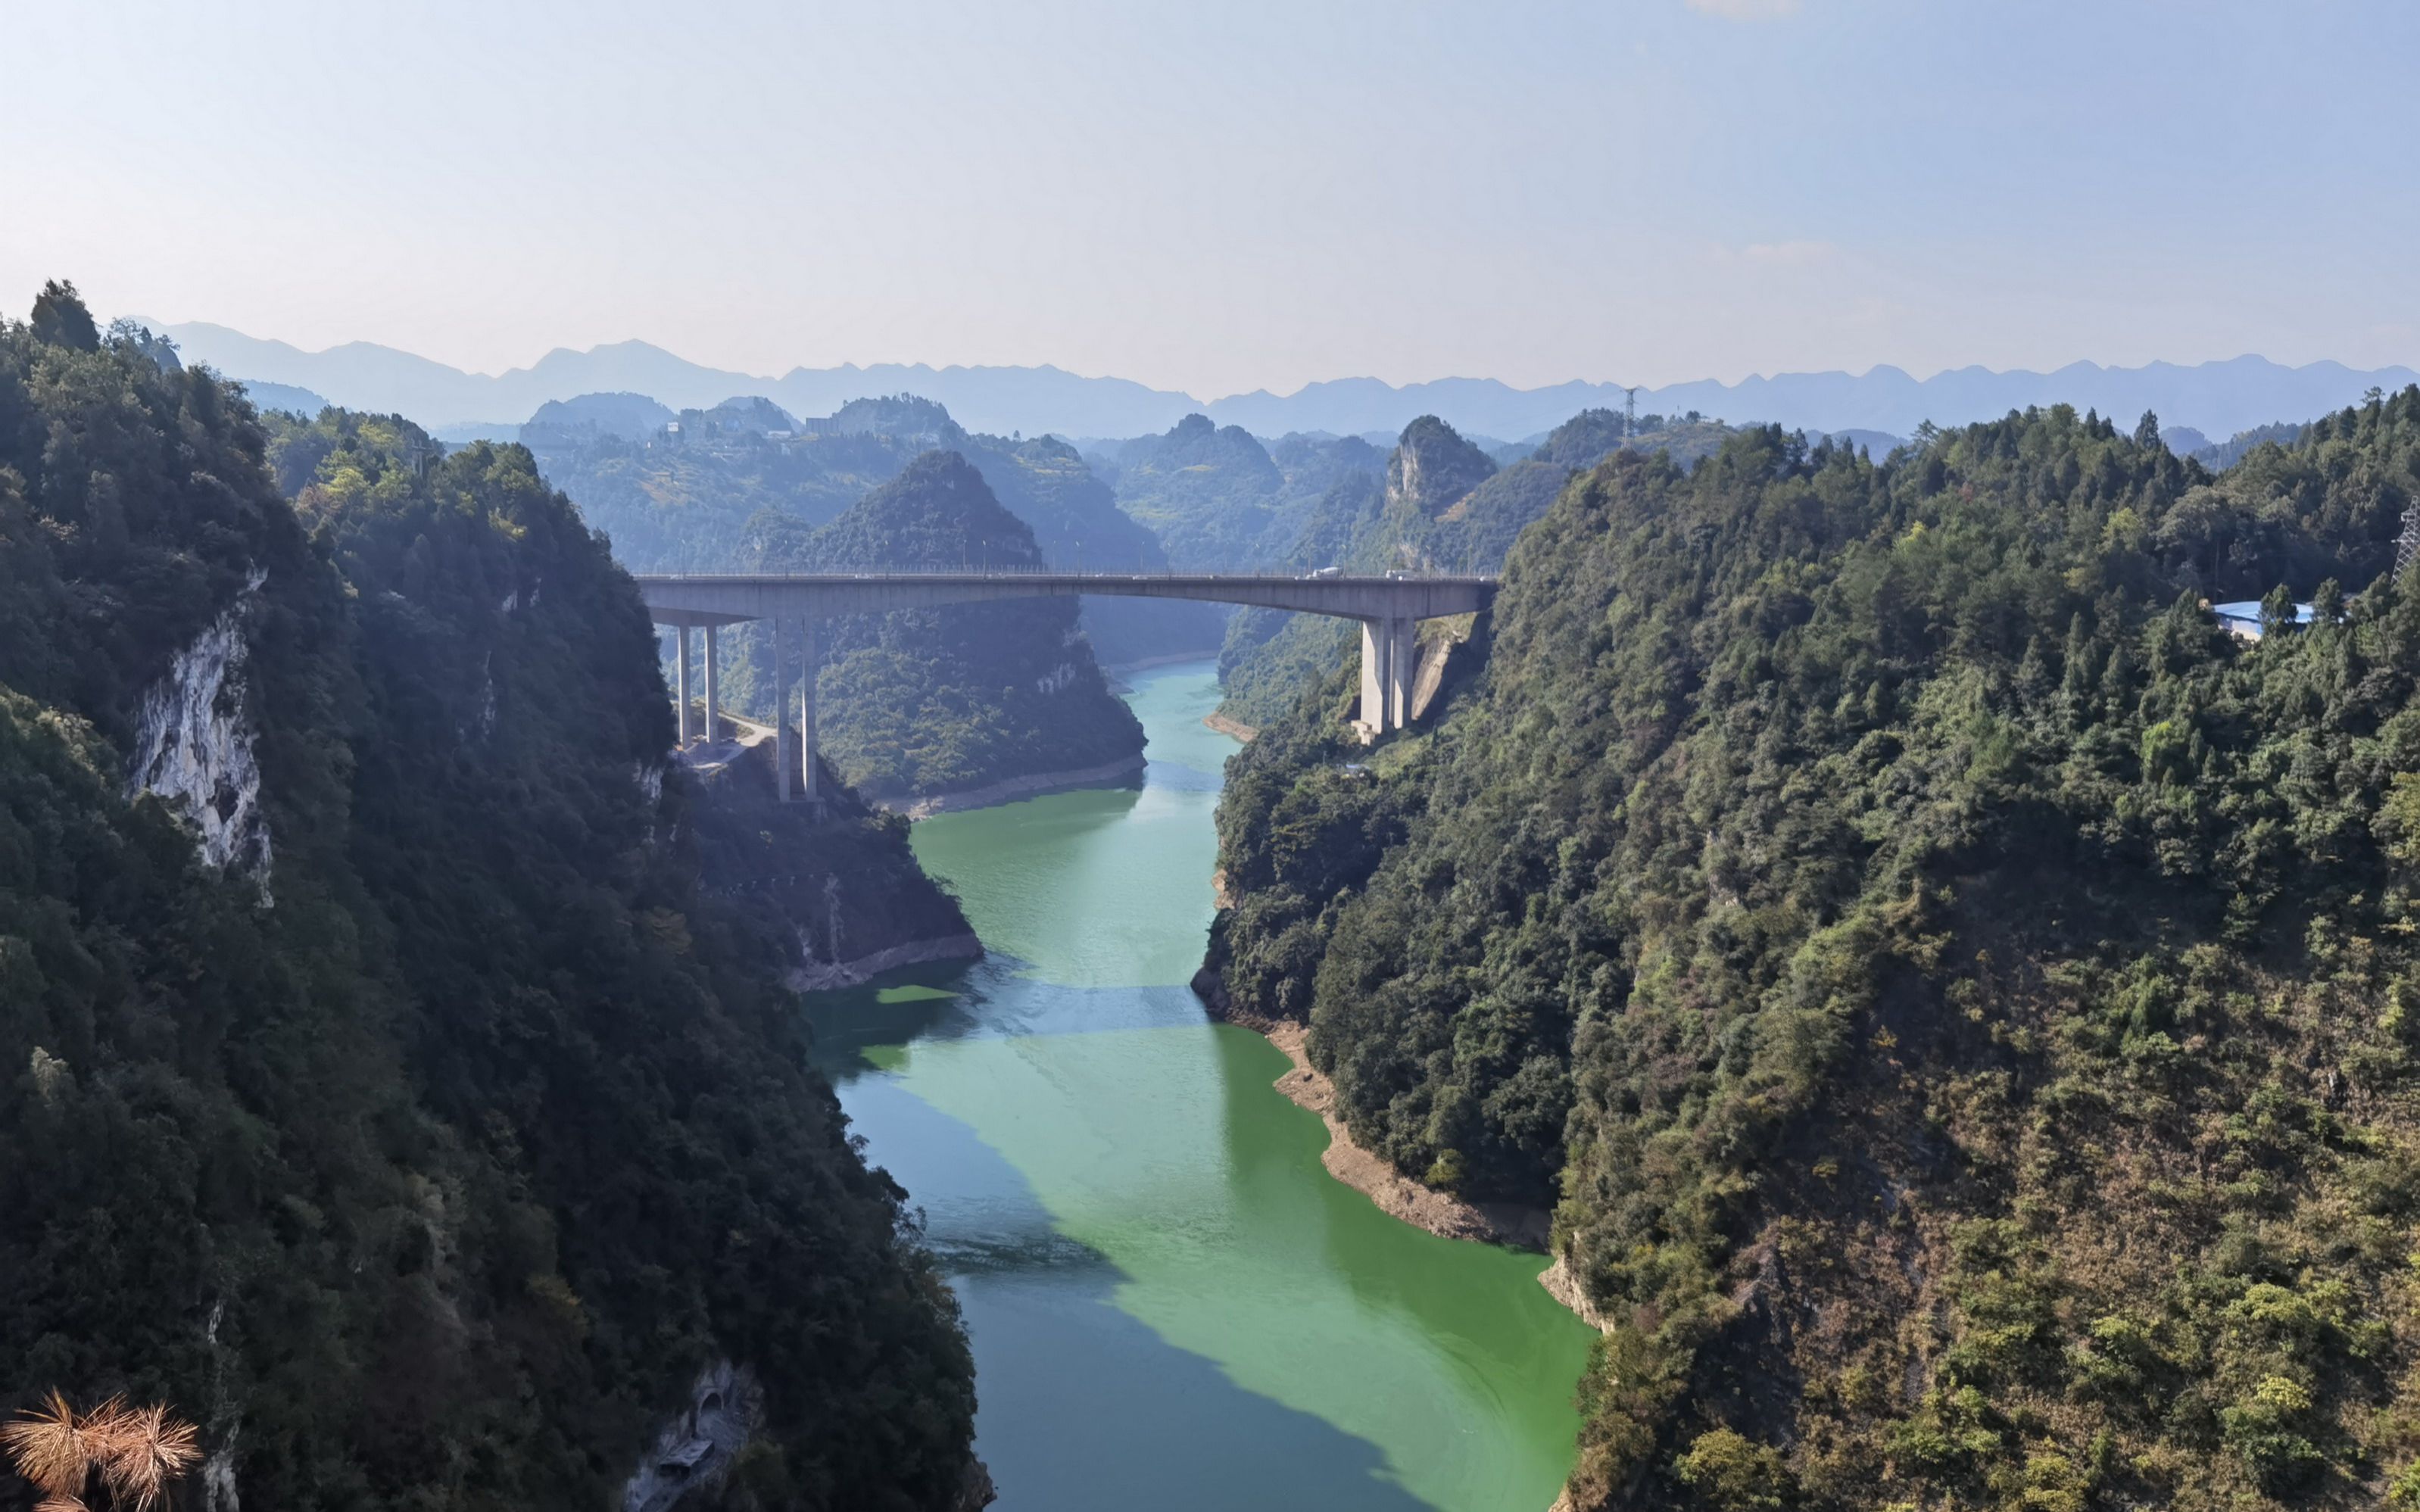 俩夫妻自驾黔湘桂(52)远观盐津河大桥,看大桥周围有着怎样的风景?